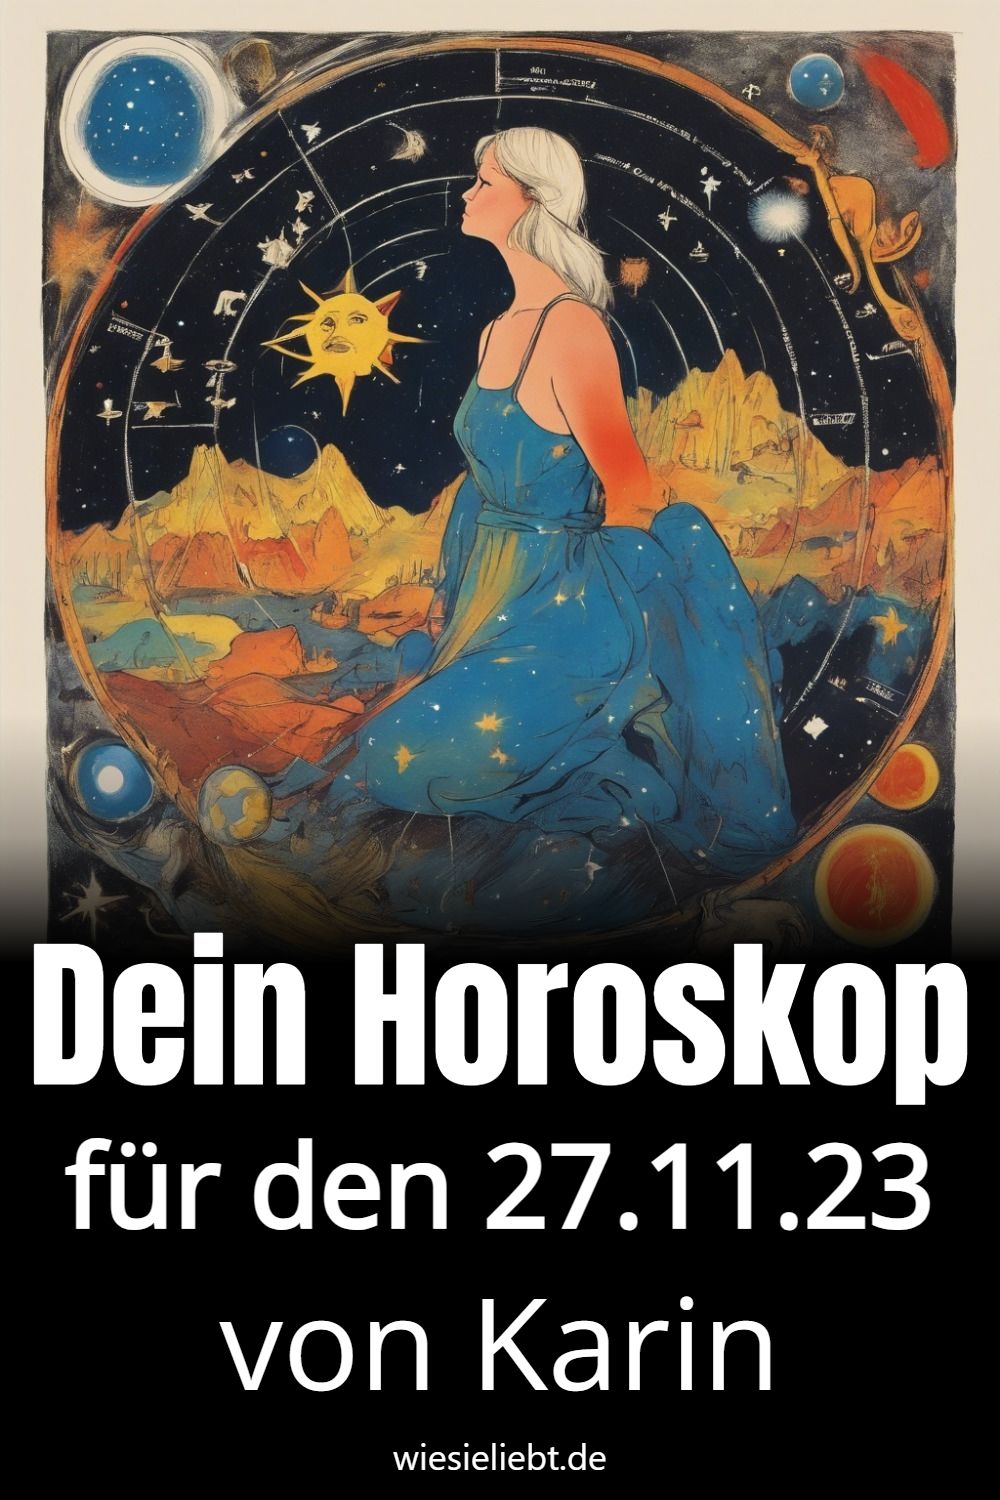 Dein Horoskop für den 27.11.23 von Karin